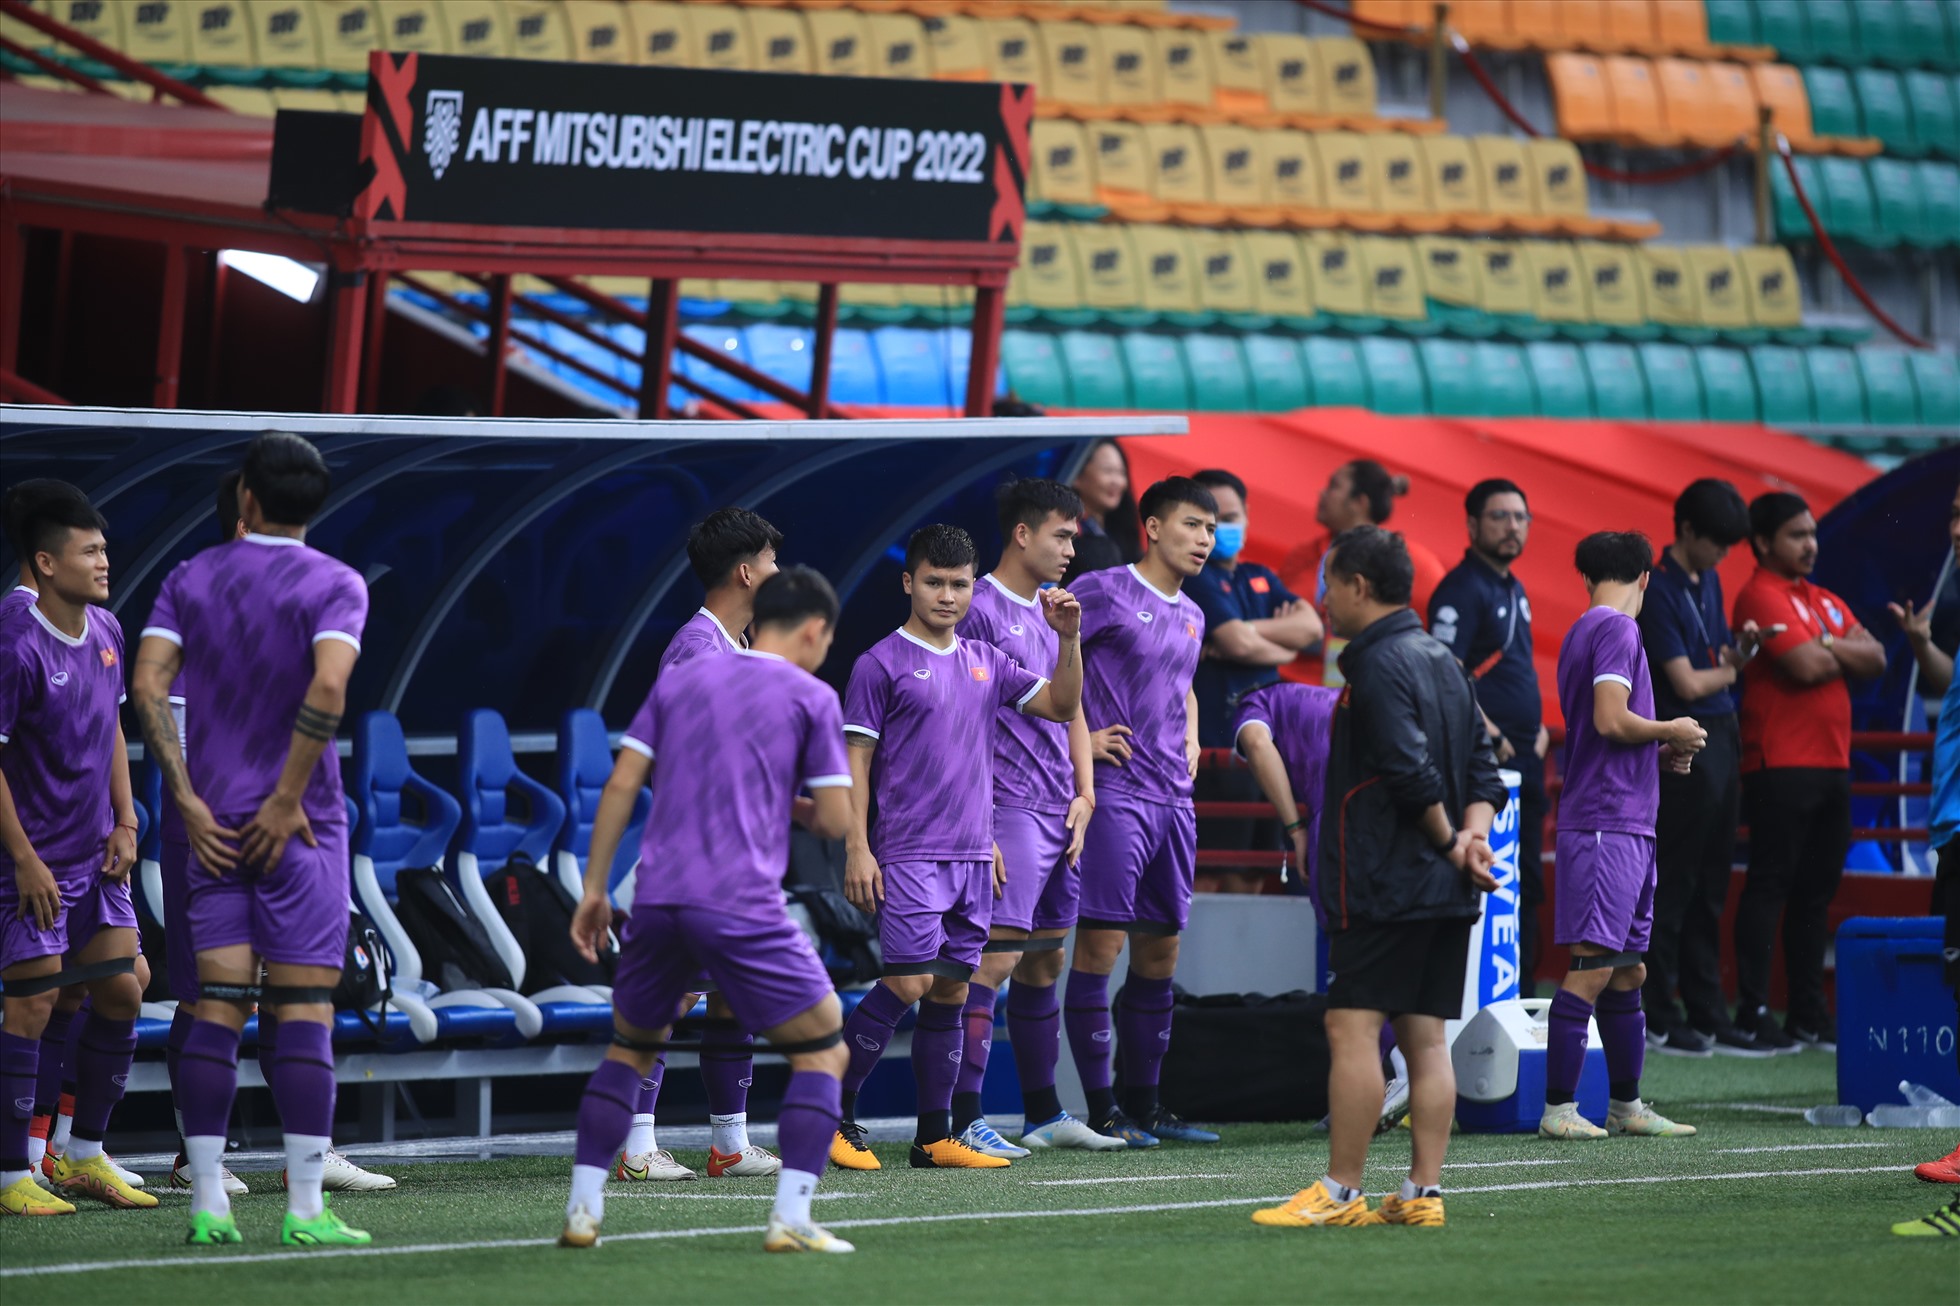 Ngày 29.12, đội tuyển Việt Nam có buổi tập cuối cùng trên sân nhân tạo Jalan Besar, trước khi bước vào trận đấu với chủ nhà Singapore vào ngày 30.12. Ảnh: Xuân Trang